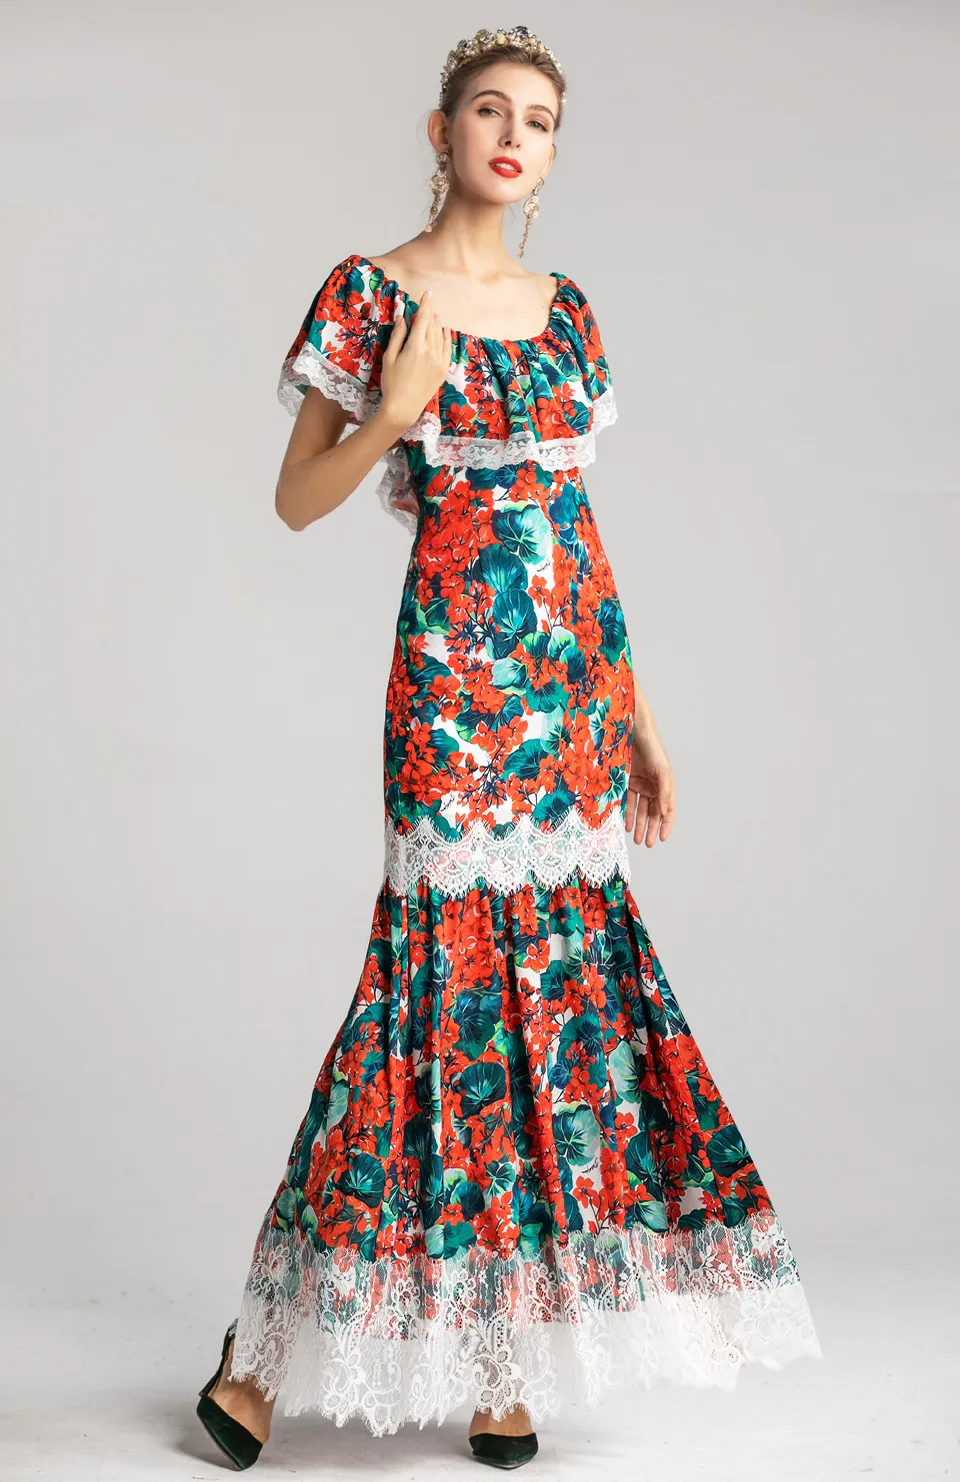 Женская взлетно-посадочная полоса дизайнерские платья Scoop Deckline оборками цветочные напечатанные напечатанные кружевные накладки.